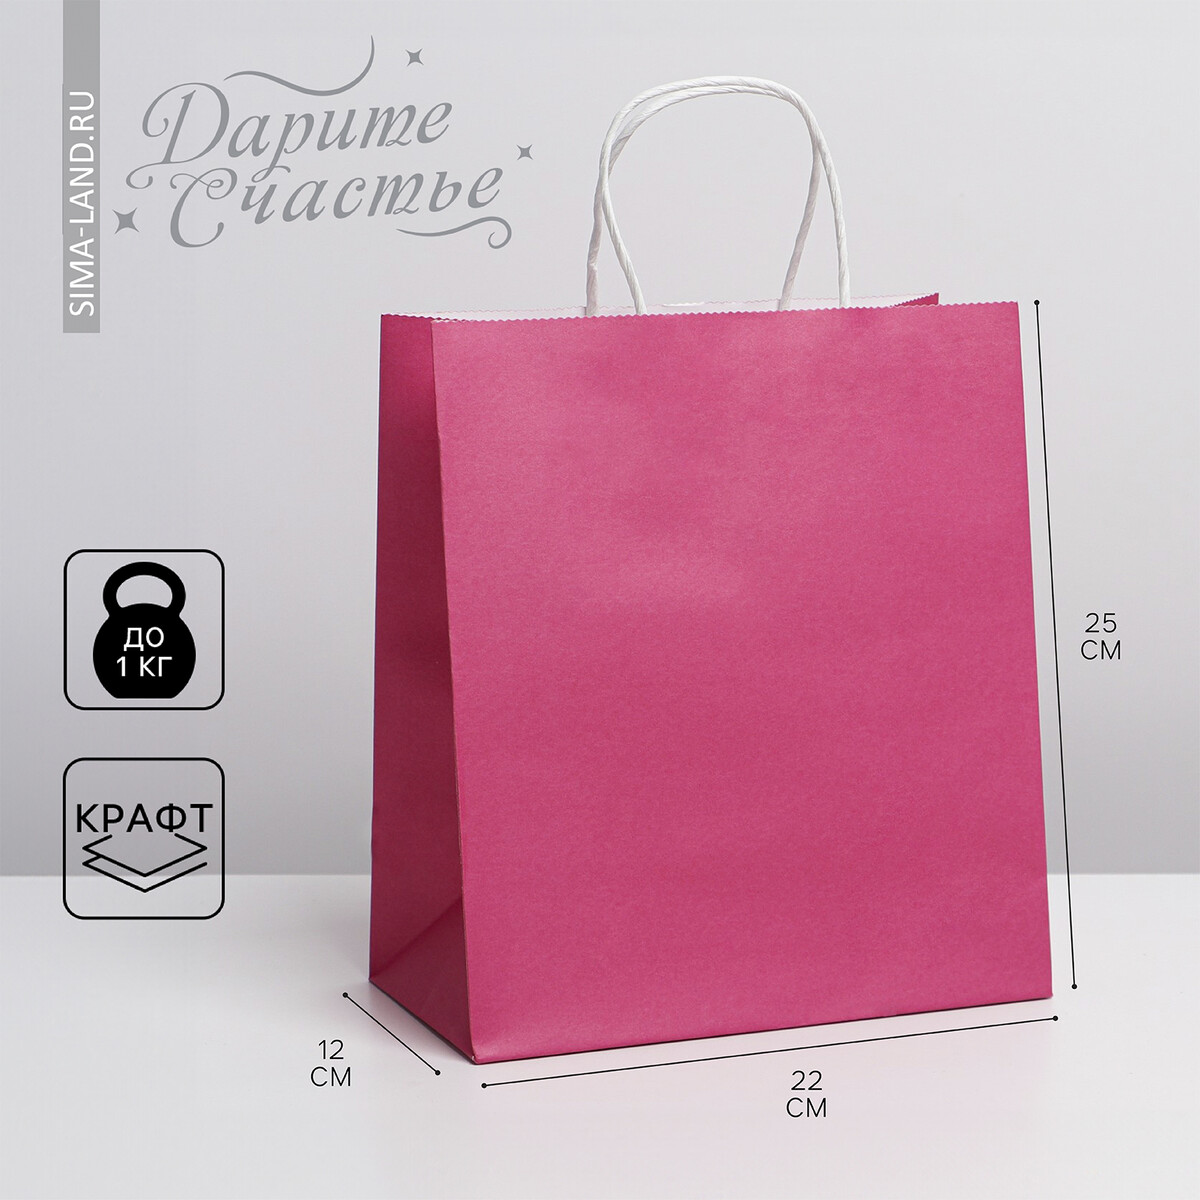 Пакет подарочный крафтовый, упаковка, pink, 22 х 25 х 12 см пакет pink flowers а3